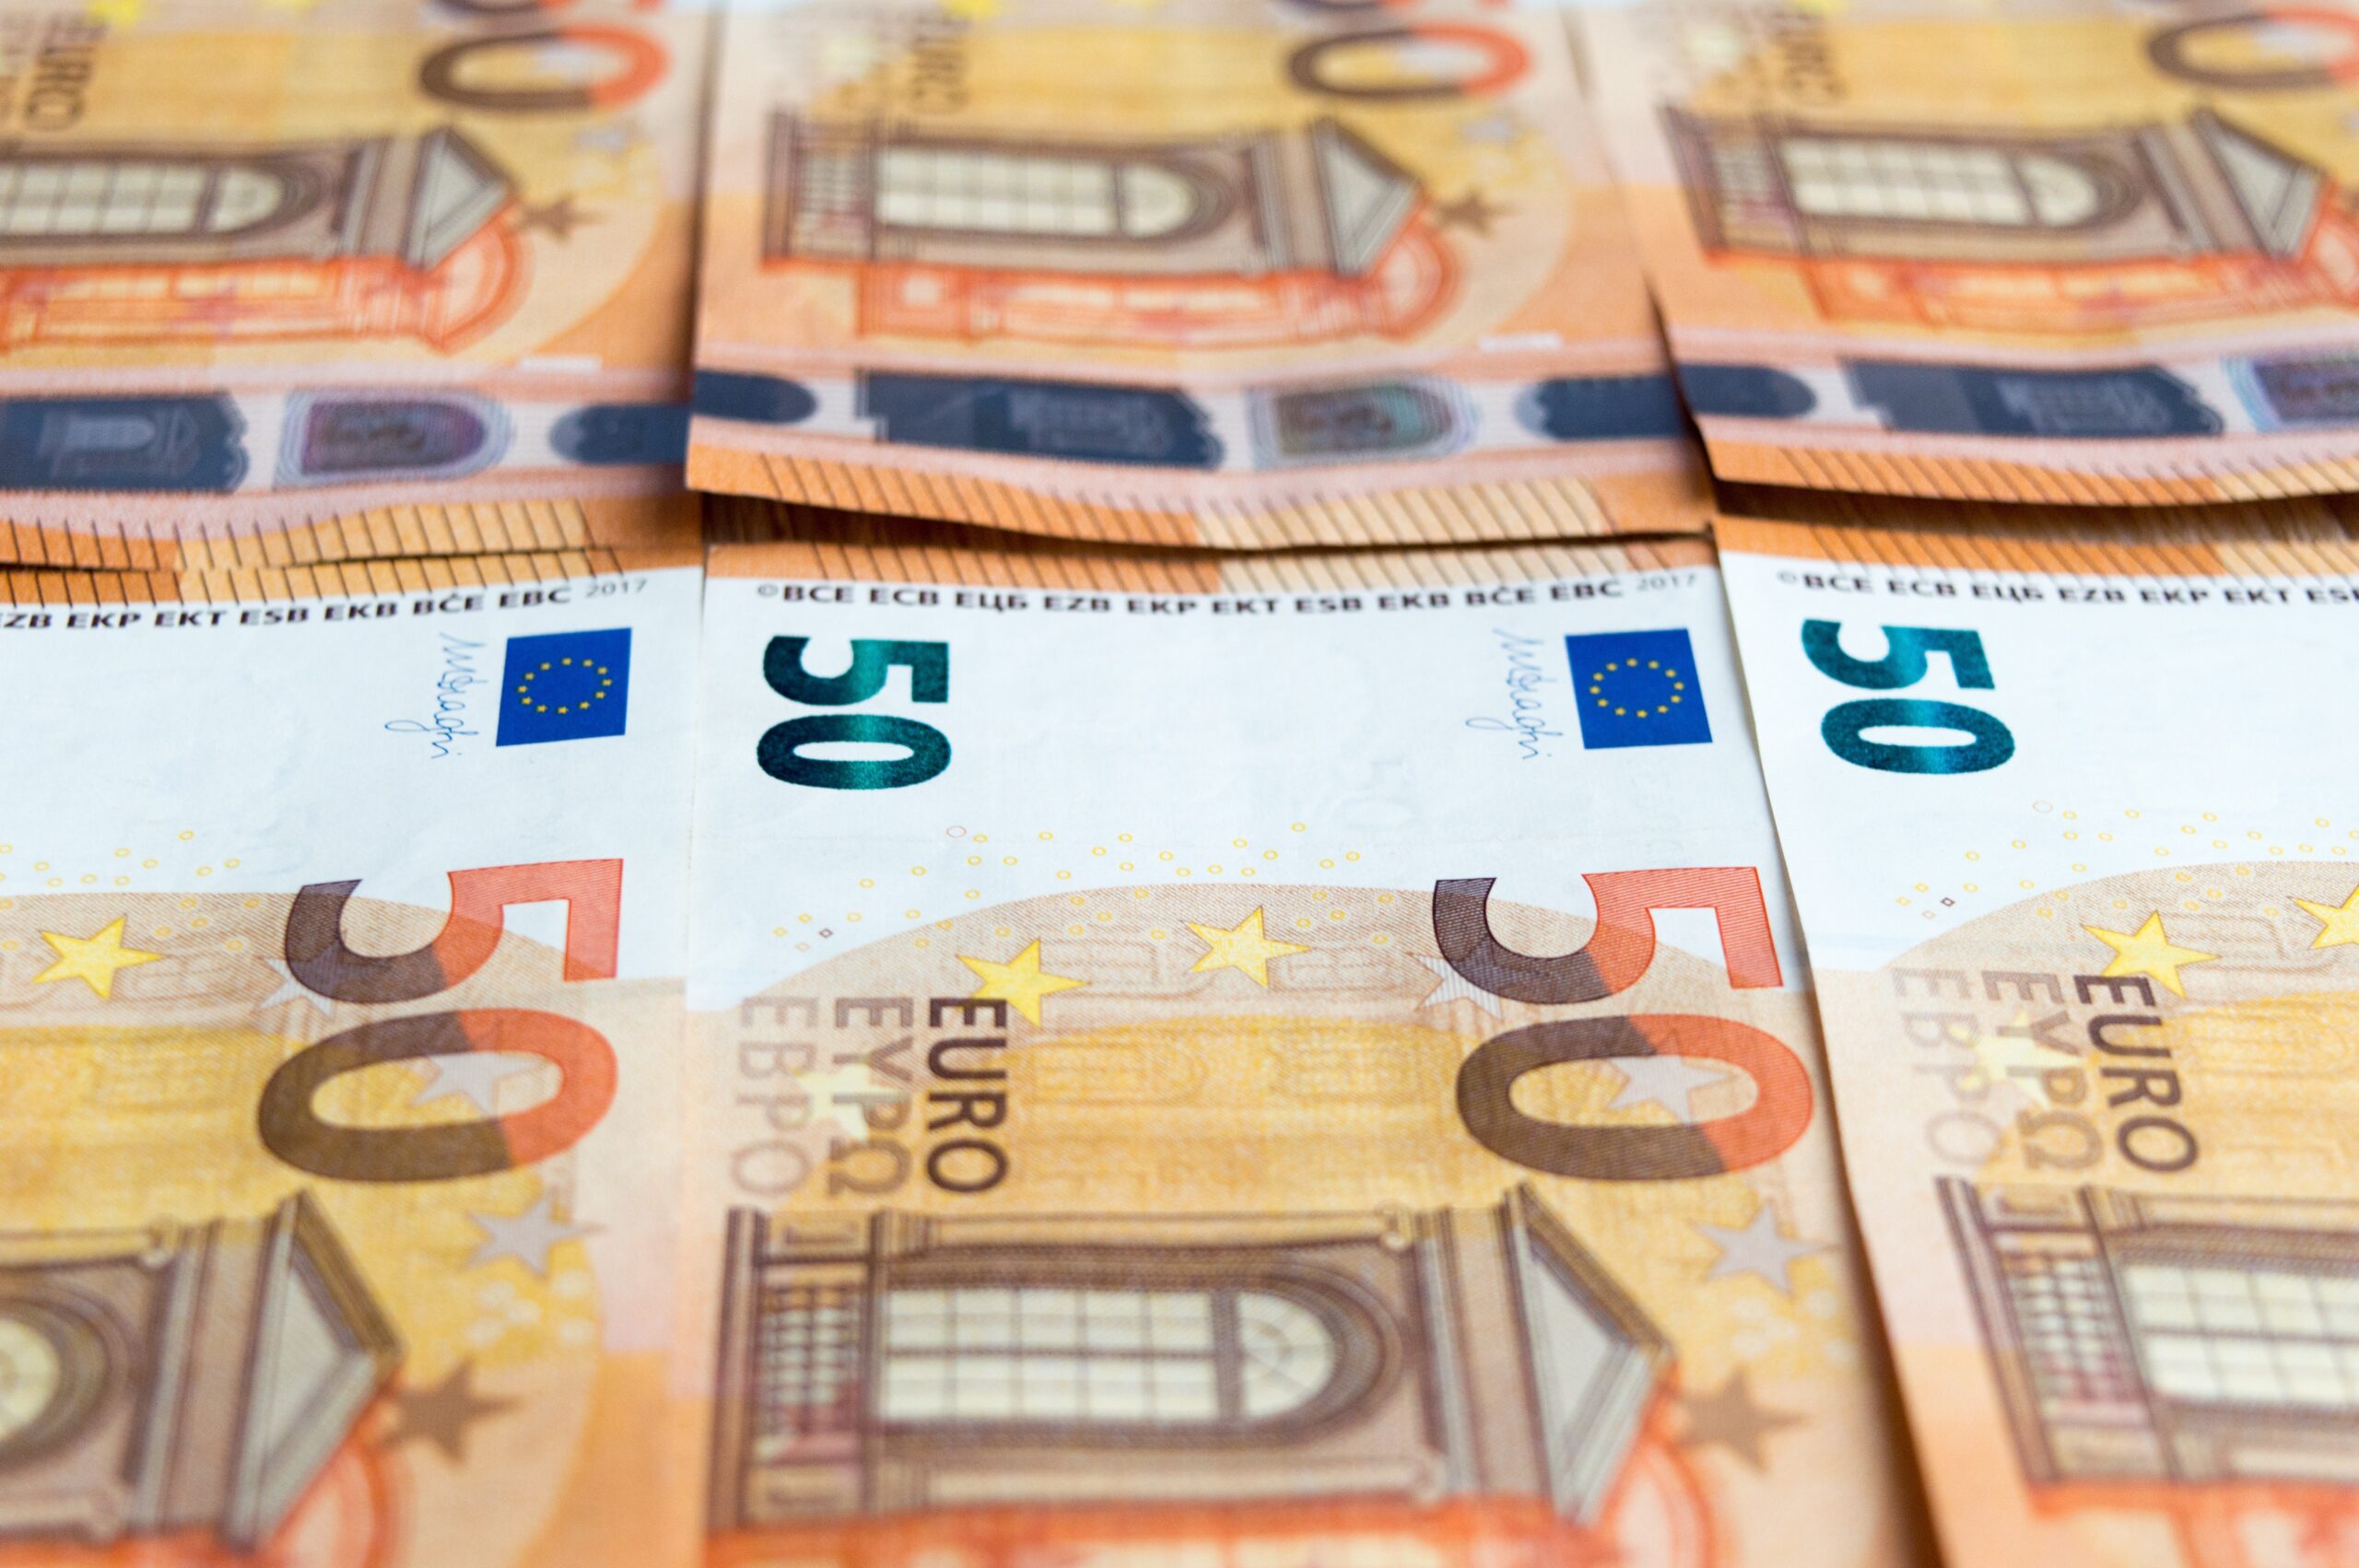 ΔΥΠΑ: Σήμερα η καταβολή του επιδόματος των 300 ευρώ σε μη επιδοτούμενους μακροχρόνια ανέργους